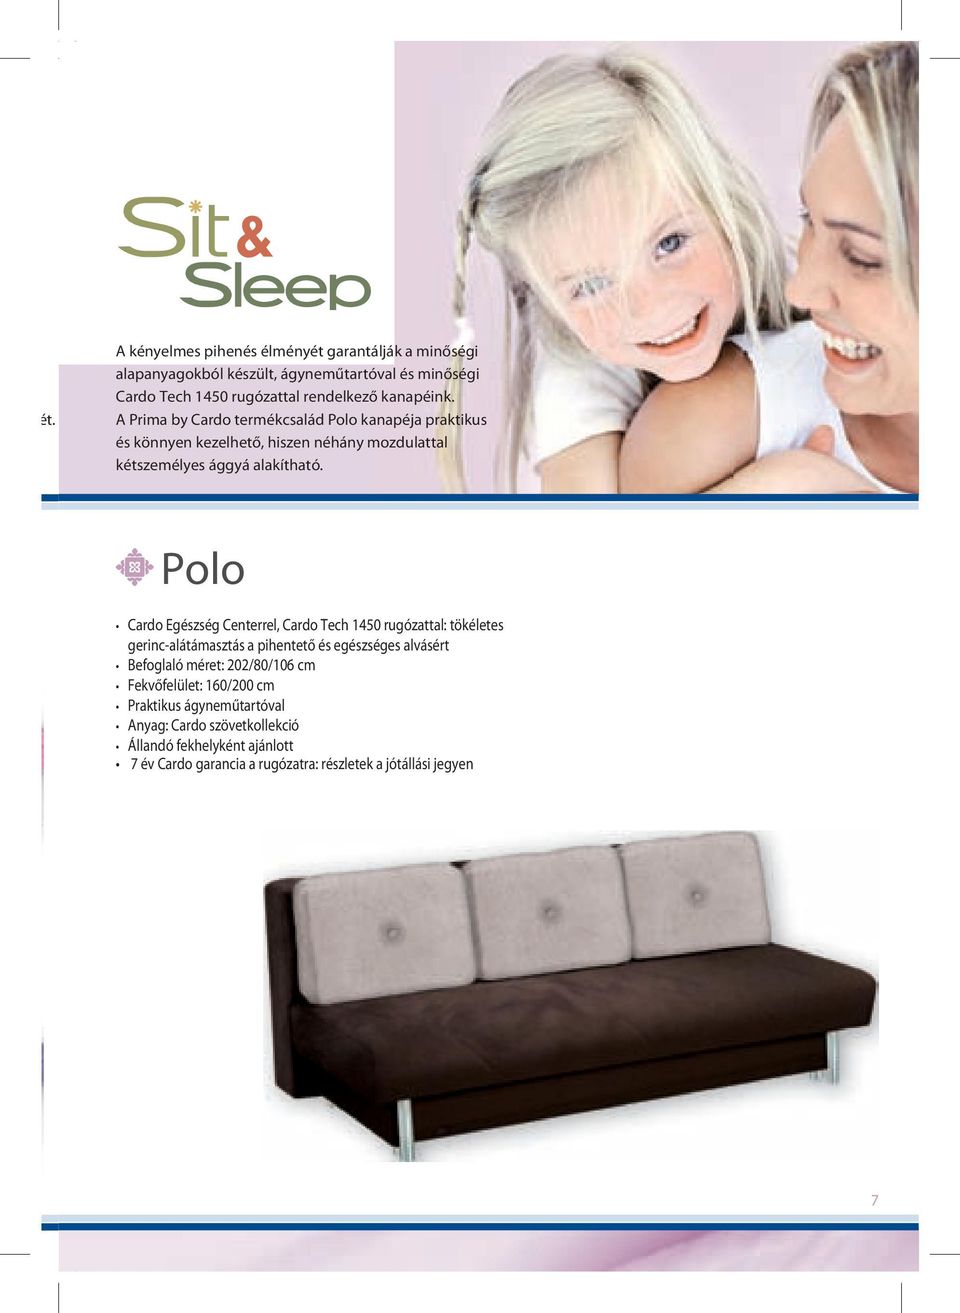 Polo Cardo Egészség Centerrel, Cardo Tech 1450 rugózattal: tökéletes gerinc-alátámasztás a pihentető és egészséges alvásért Befoglaló méret: 202/80/106 cm